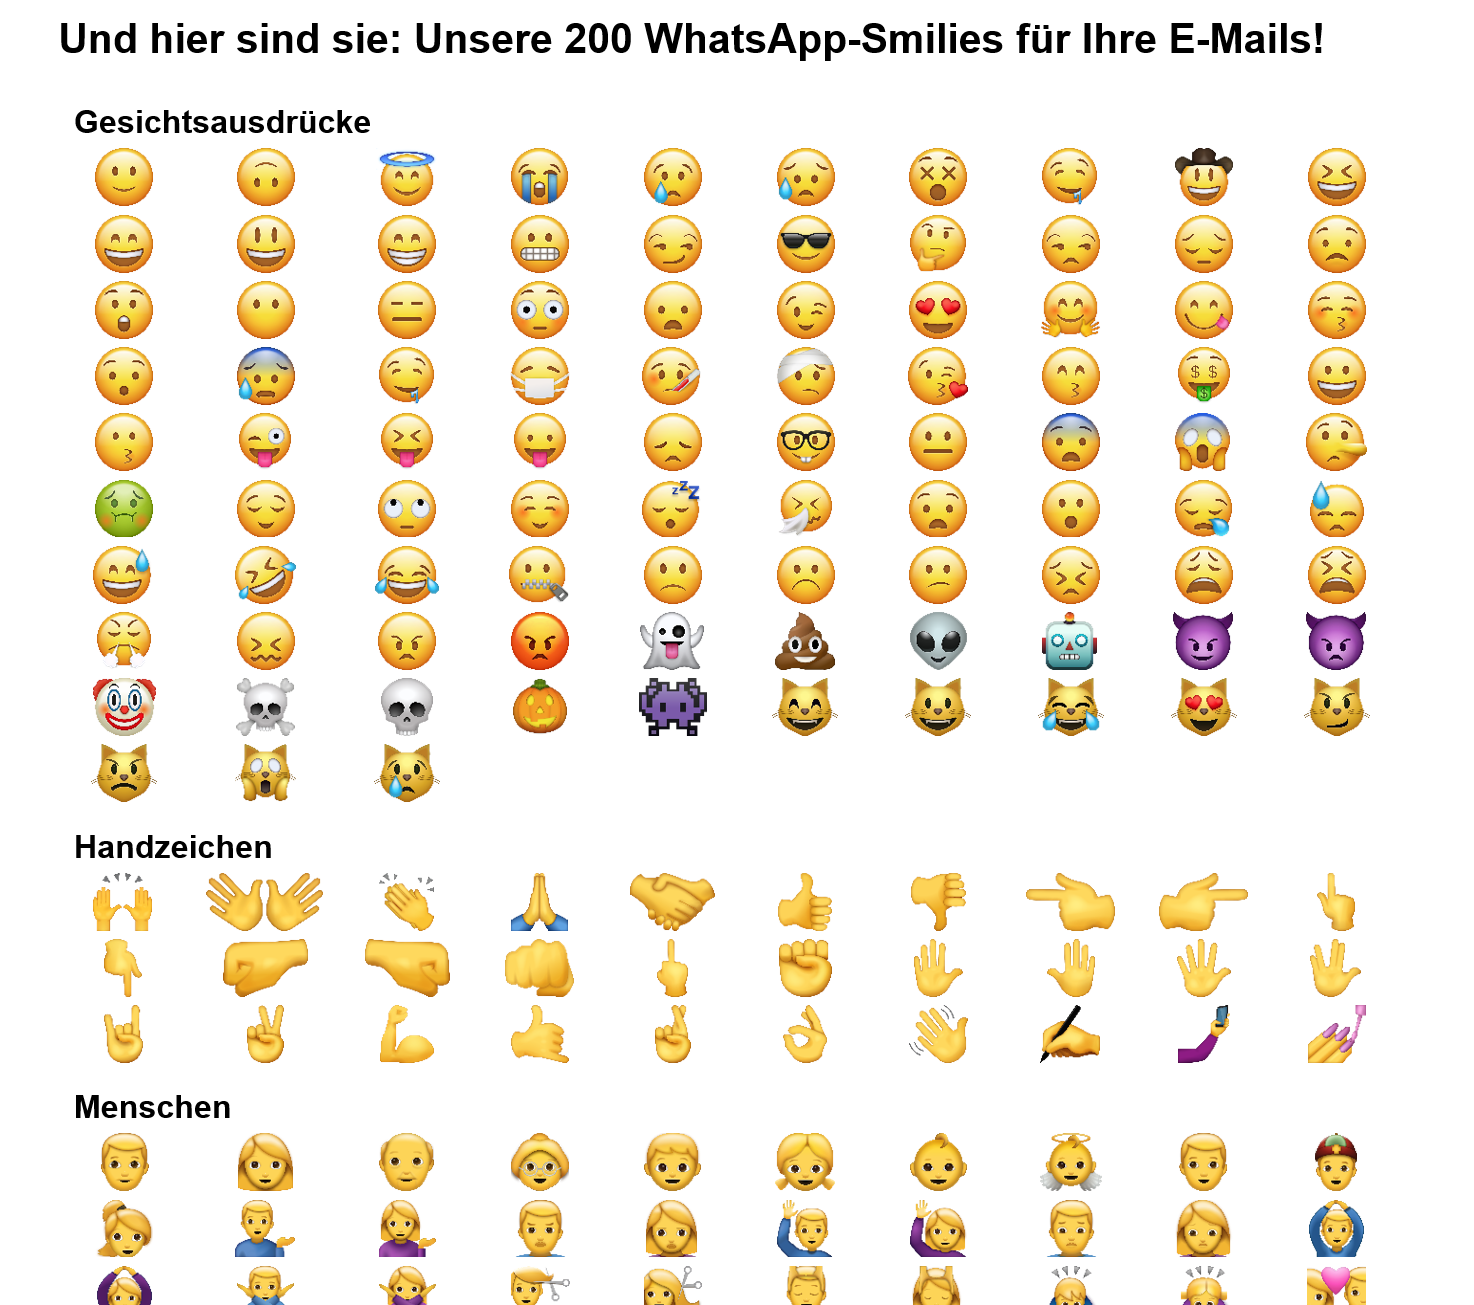 Einfügen und emojis kopieren zum Alle Emojis